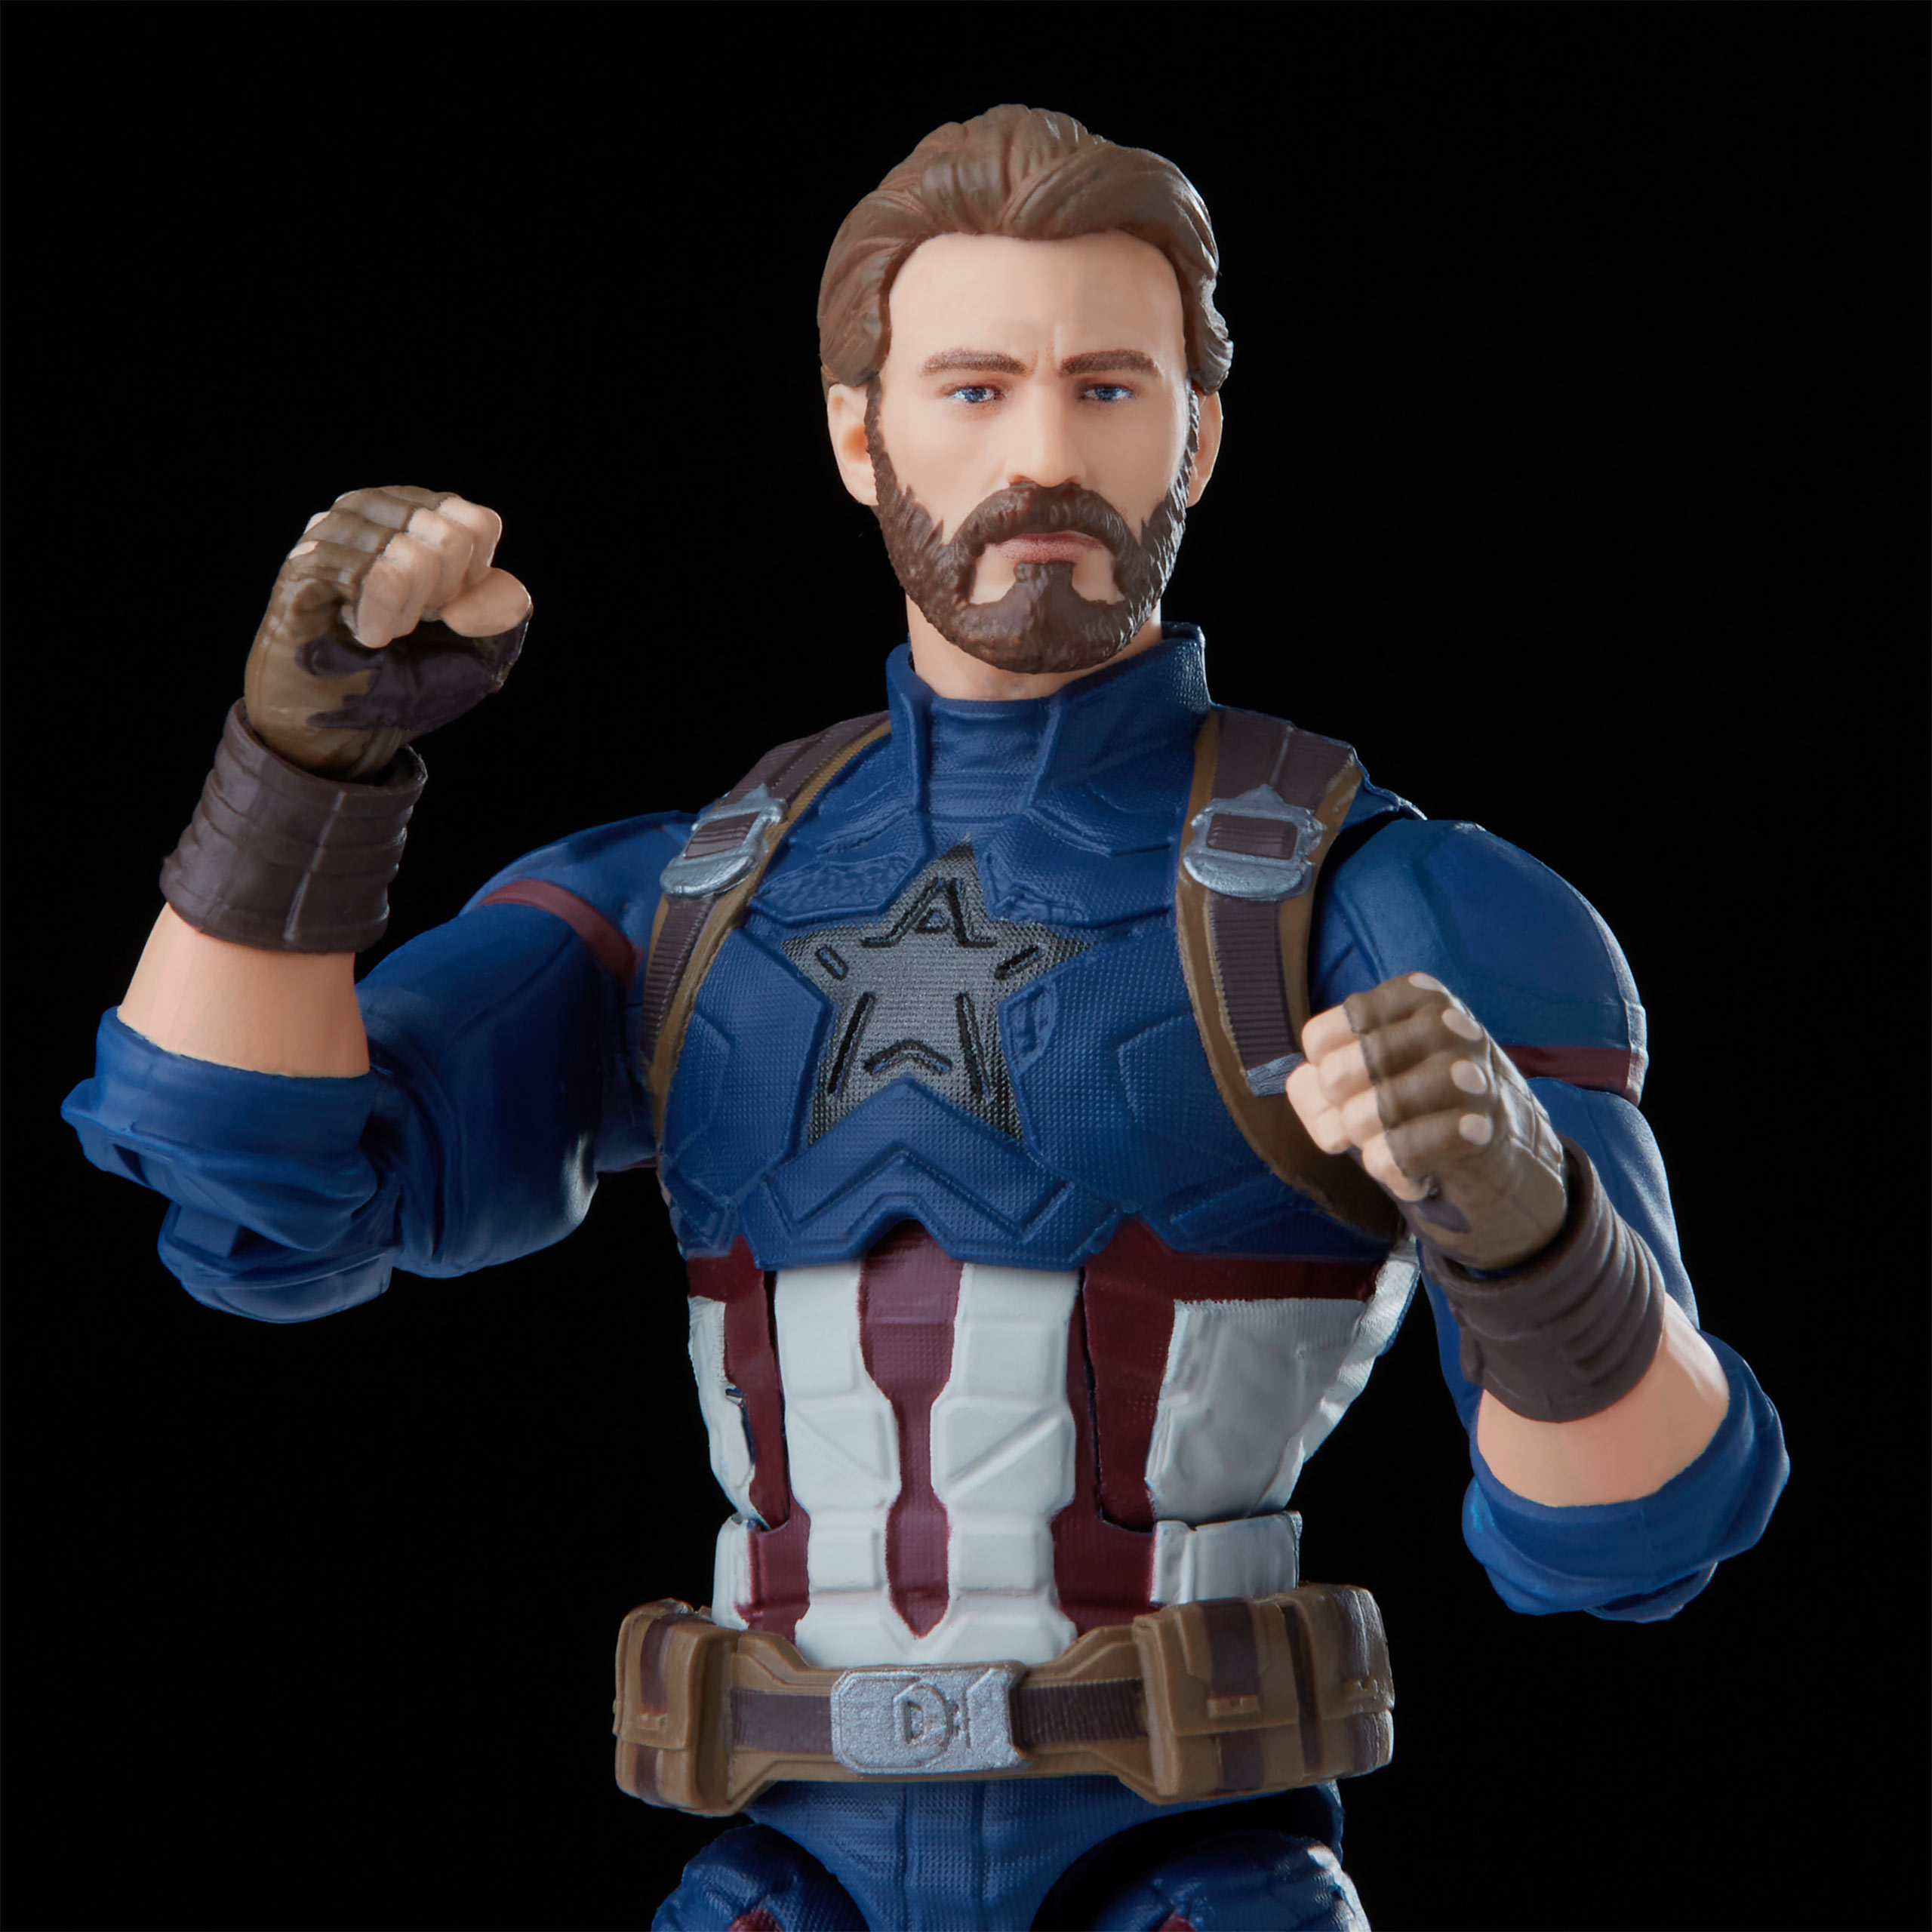 Avengers - Captain America Action Figure 16.5 cm